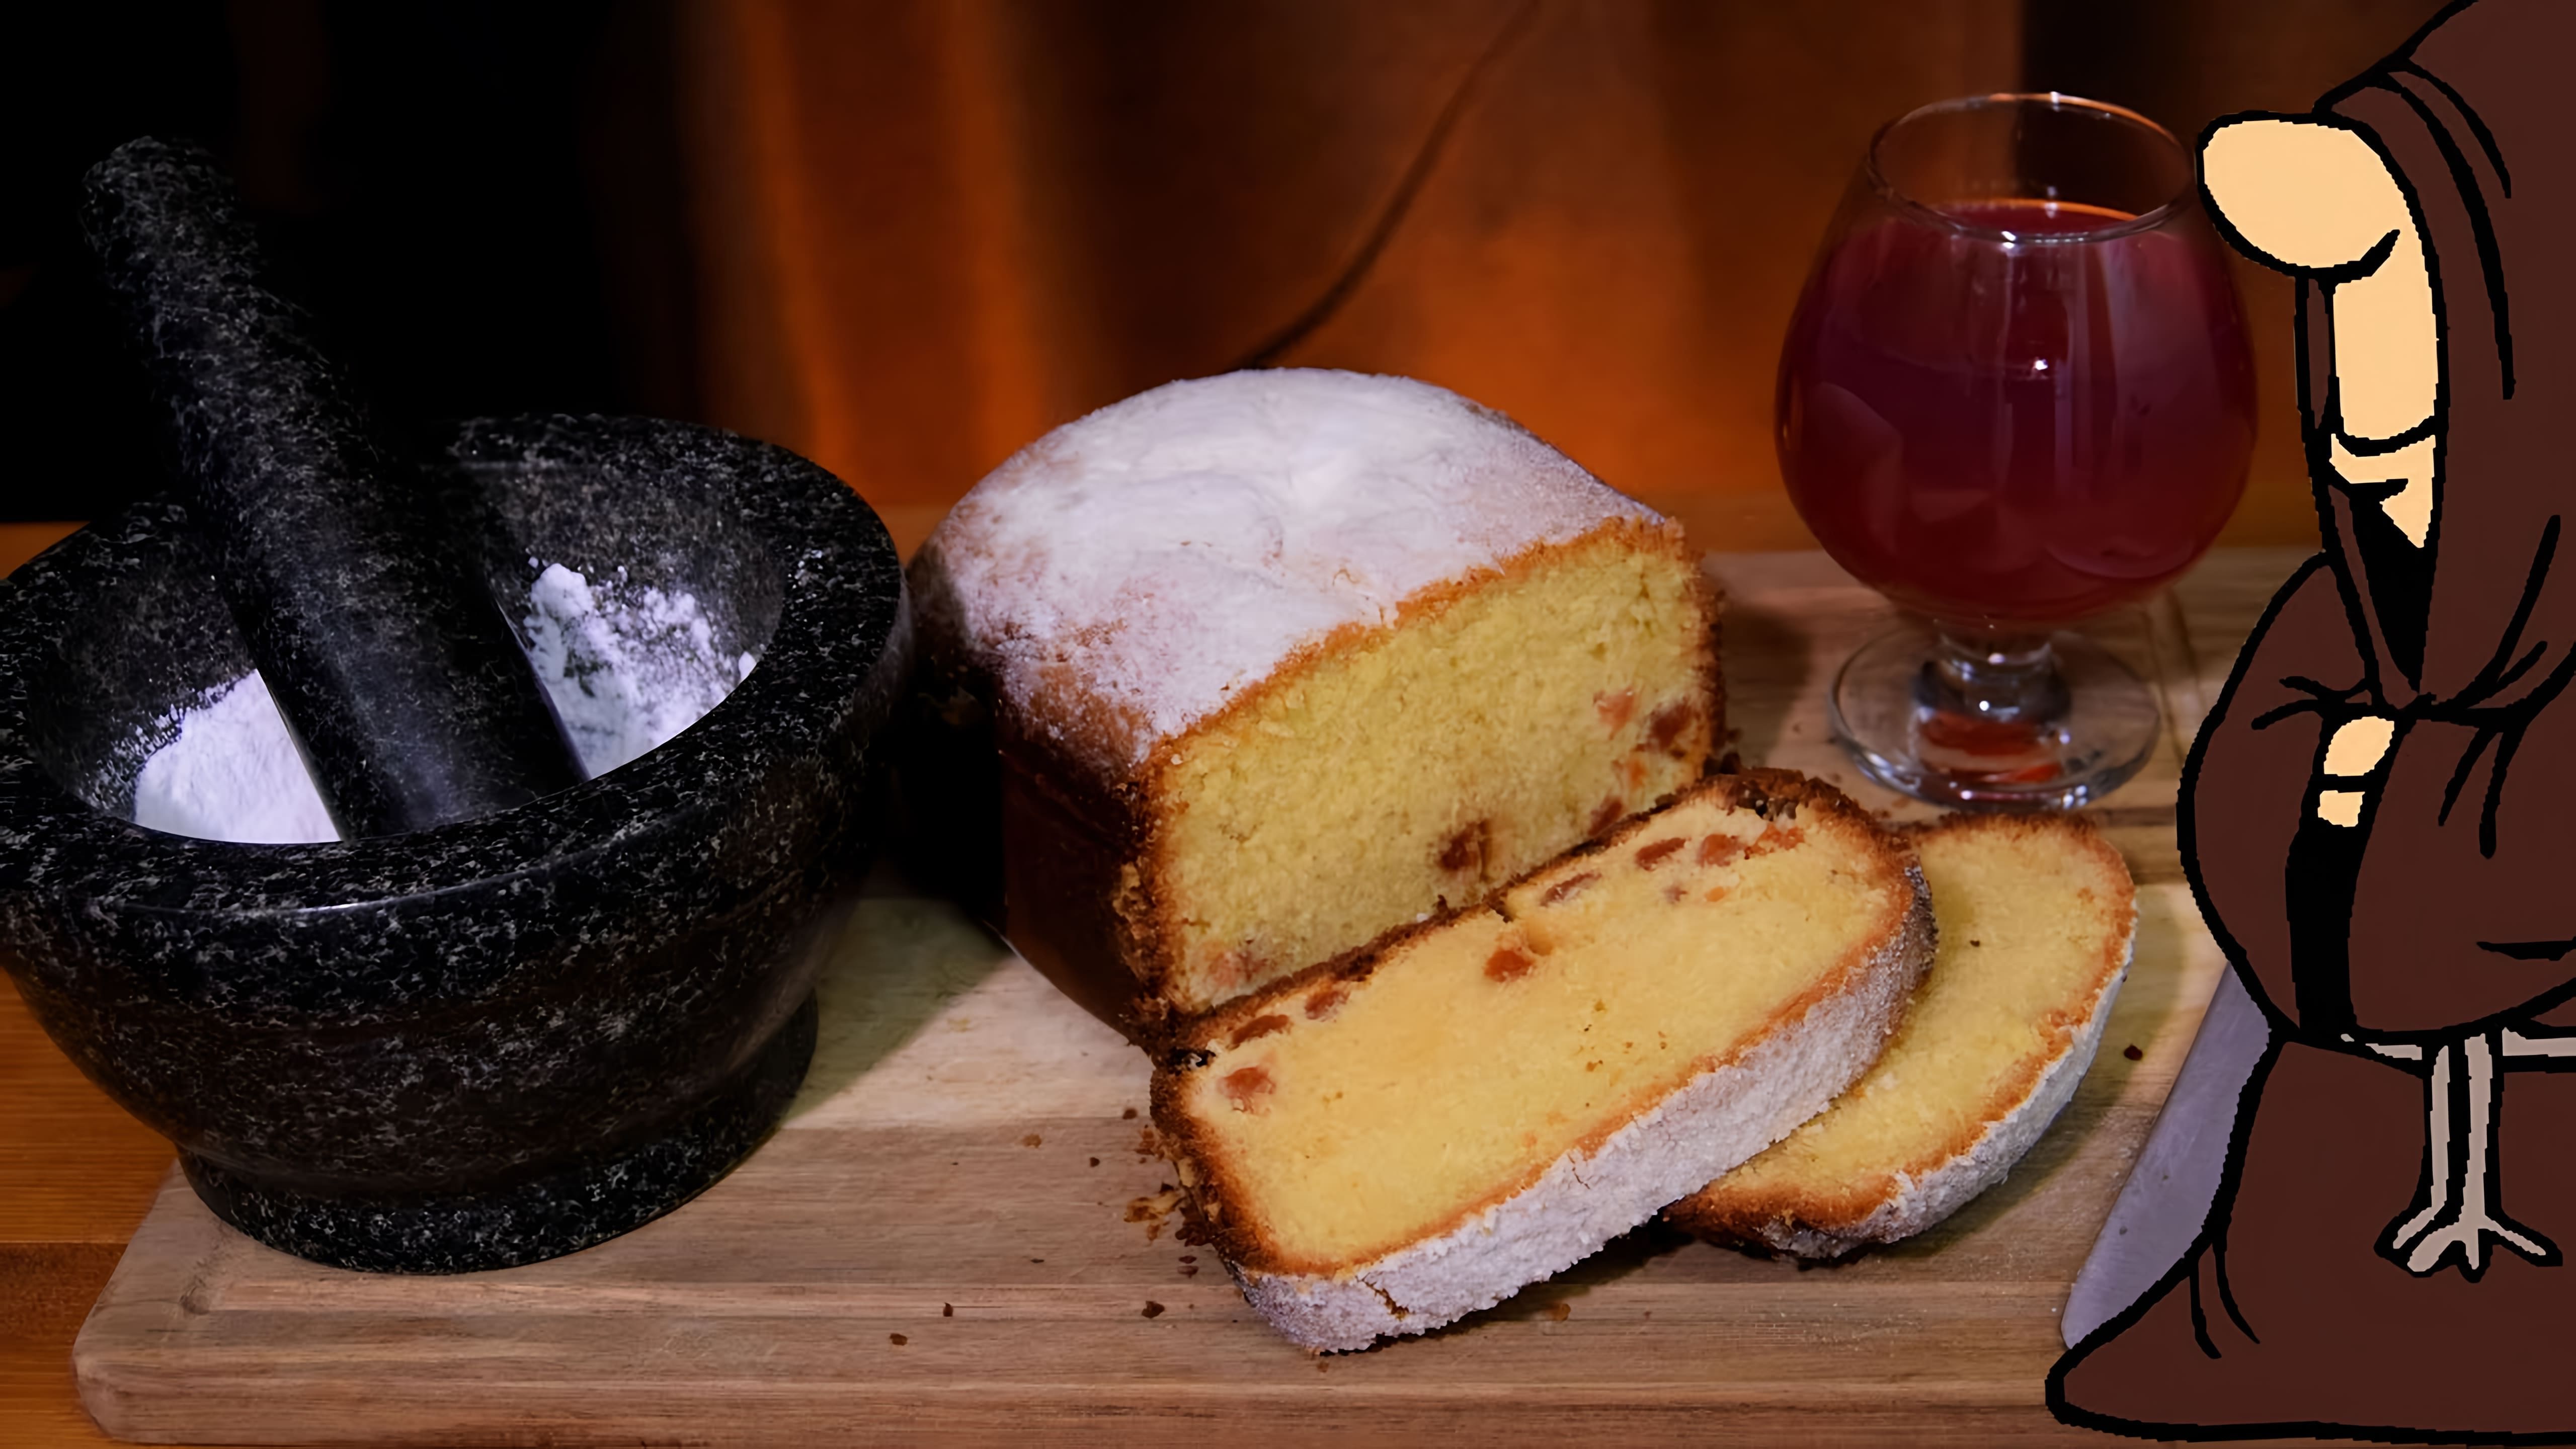 В этом видео демонстрируется процесс приготовления вкуснейшего творожного кекса с изюмом в хлебопечке